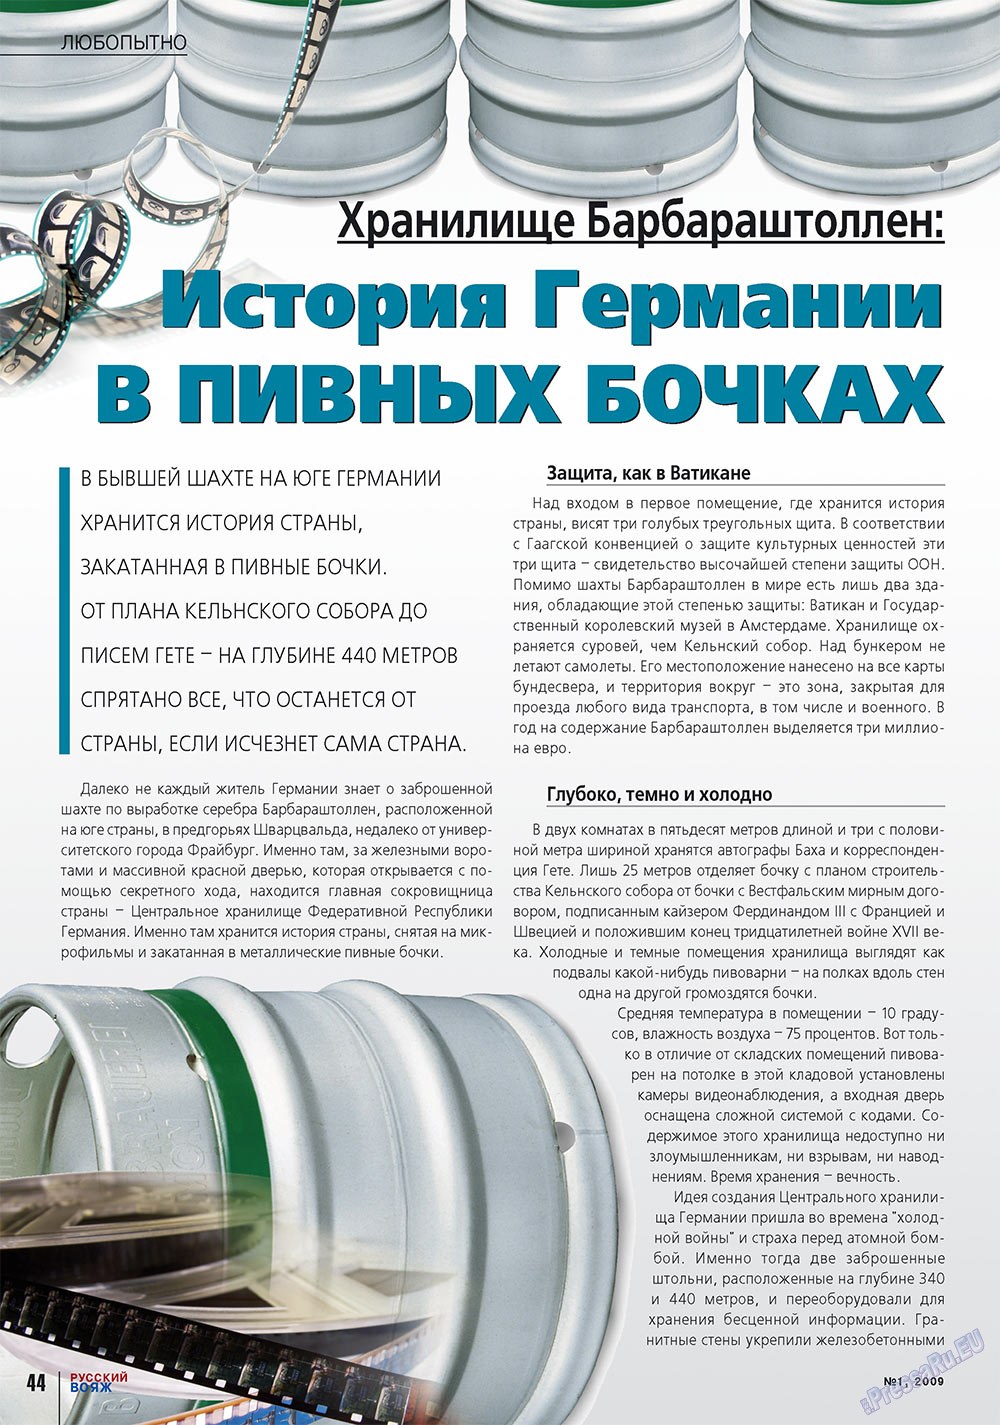 Русский вояж (журнал). 2009 год, номер 1, стр. 44